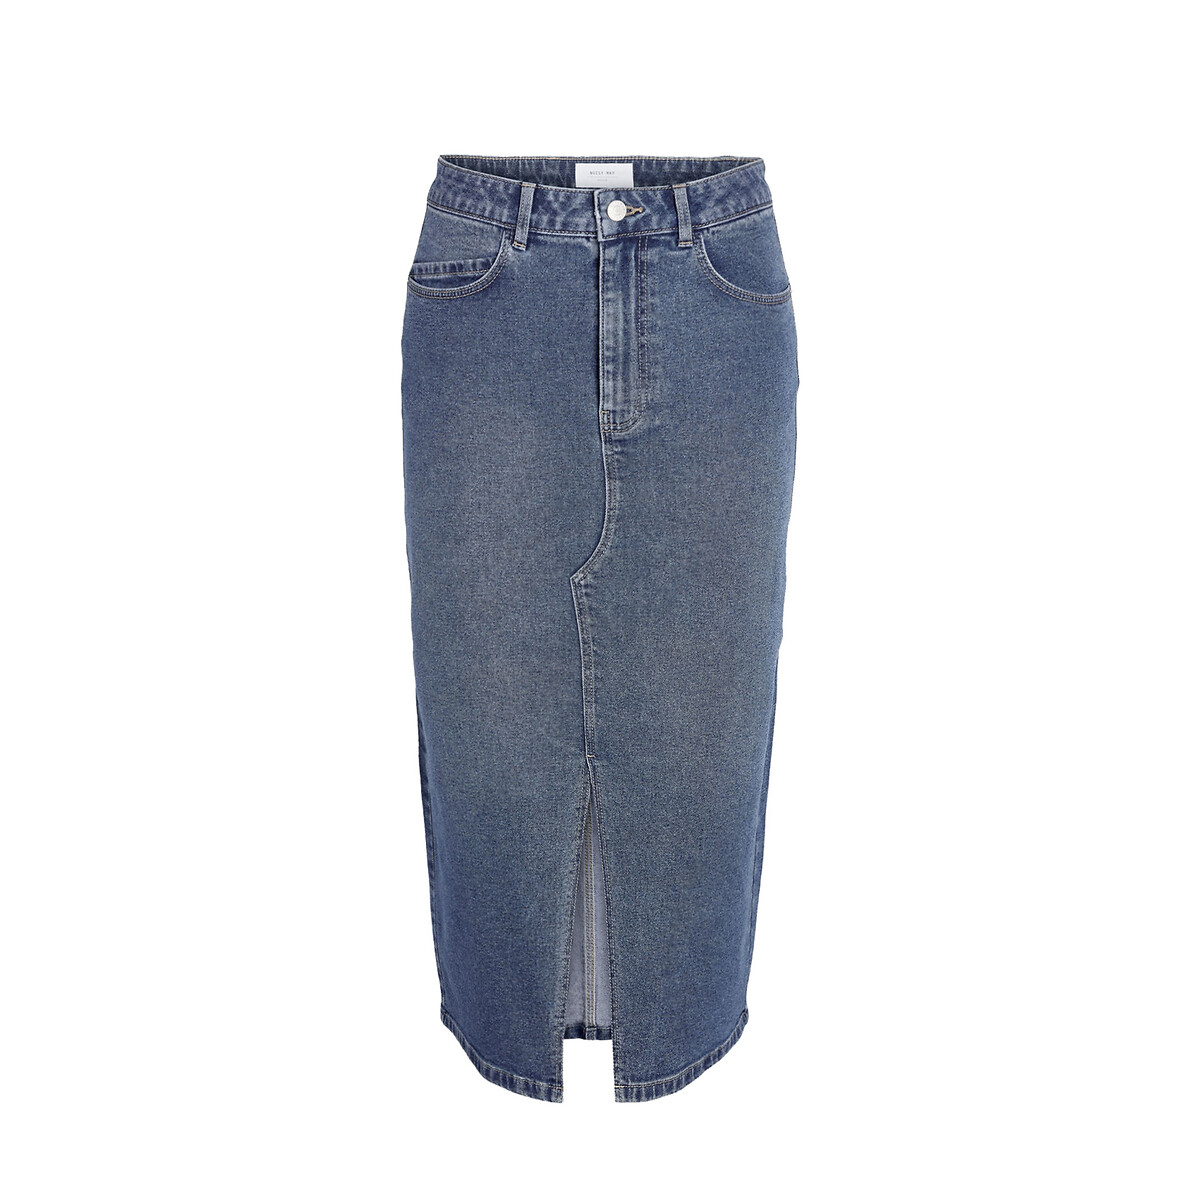 Юбка-миди из джинсовой ткани XS синий юбка из легкой джинсовой ткани 3 12 лет 5 лет 108 см синий